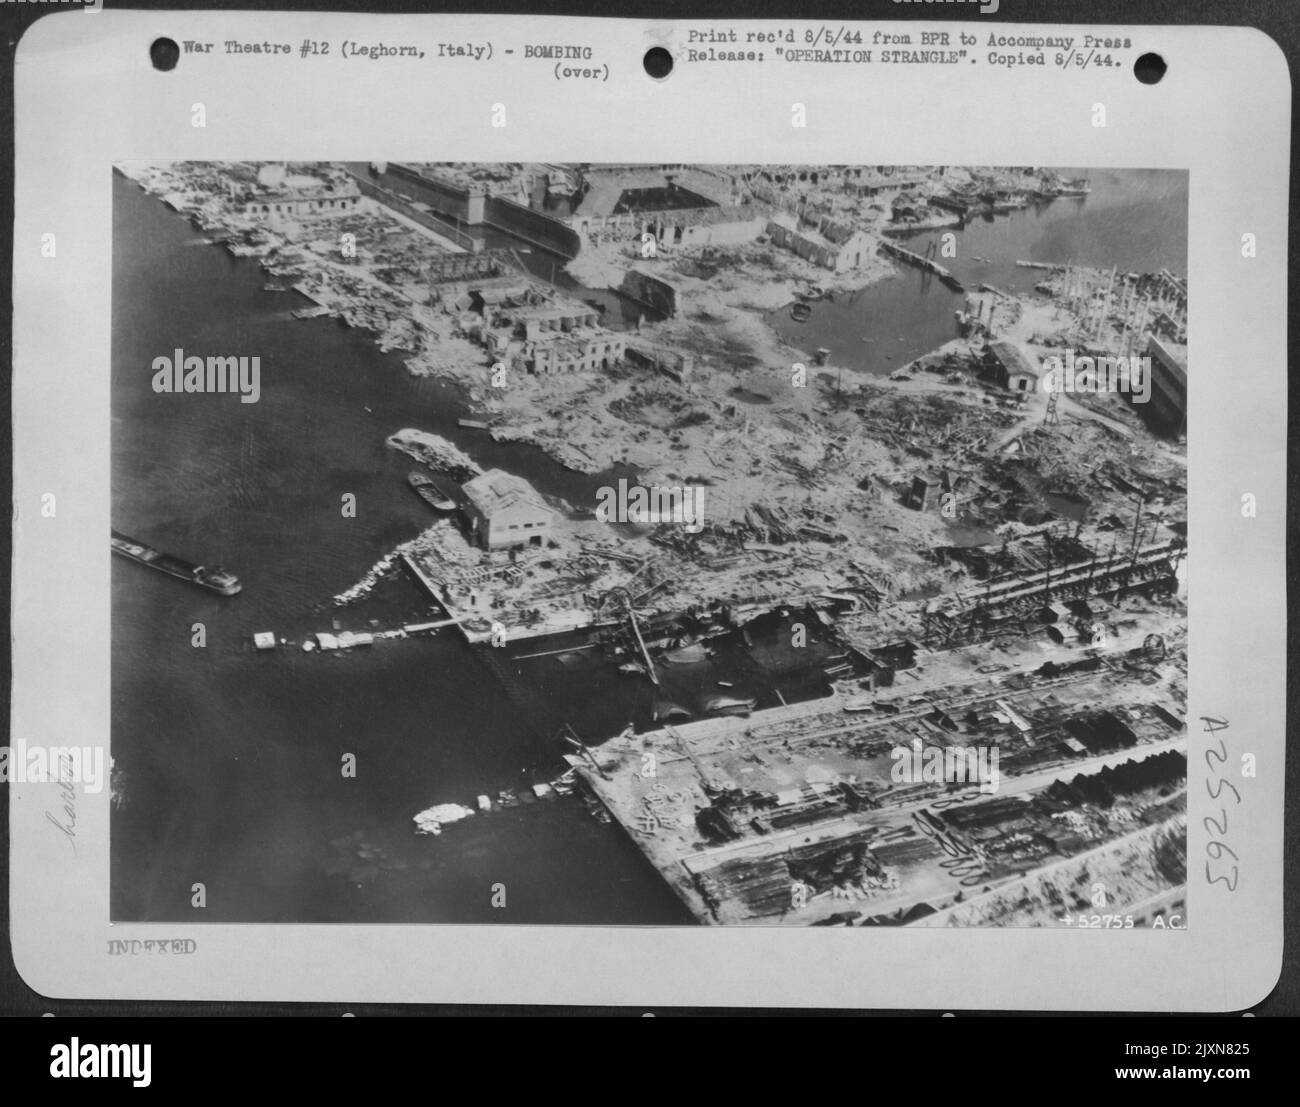 TAF-Mittel-, Licht- und Jagdbomber warfen zusammen mit AAF-Schweren und RAF-Nachtbombern insgesamt mehr als 1.100 Tonnen Bomben auf den Hafen von Leghorn, Italien. Stockfoto